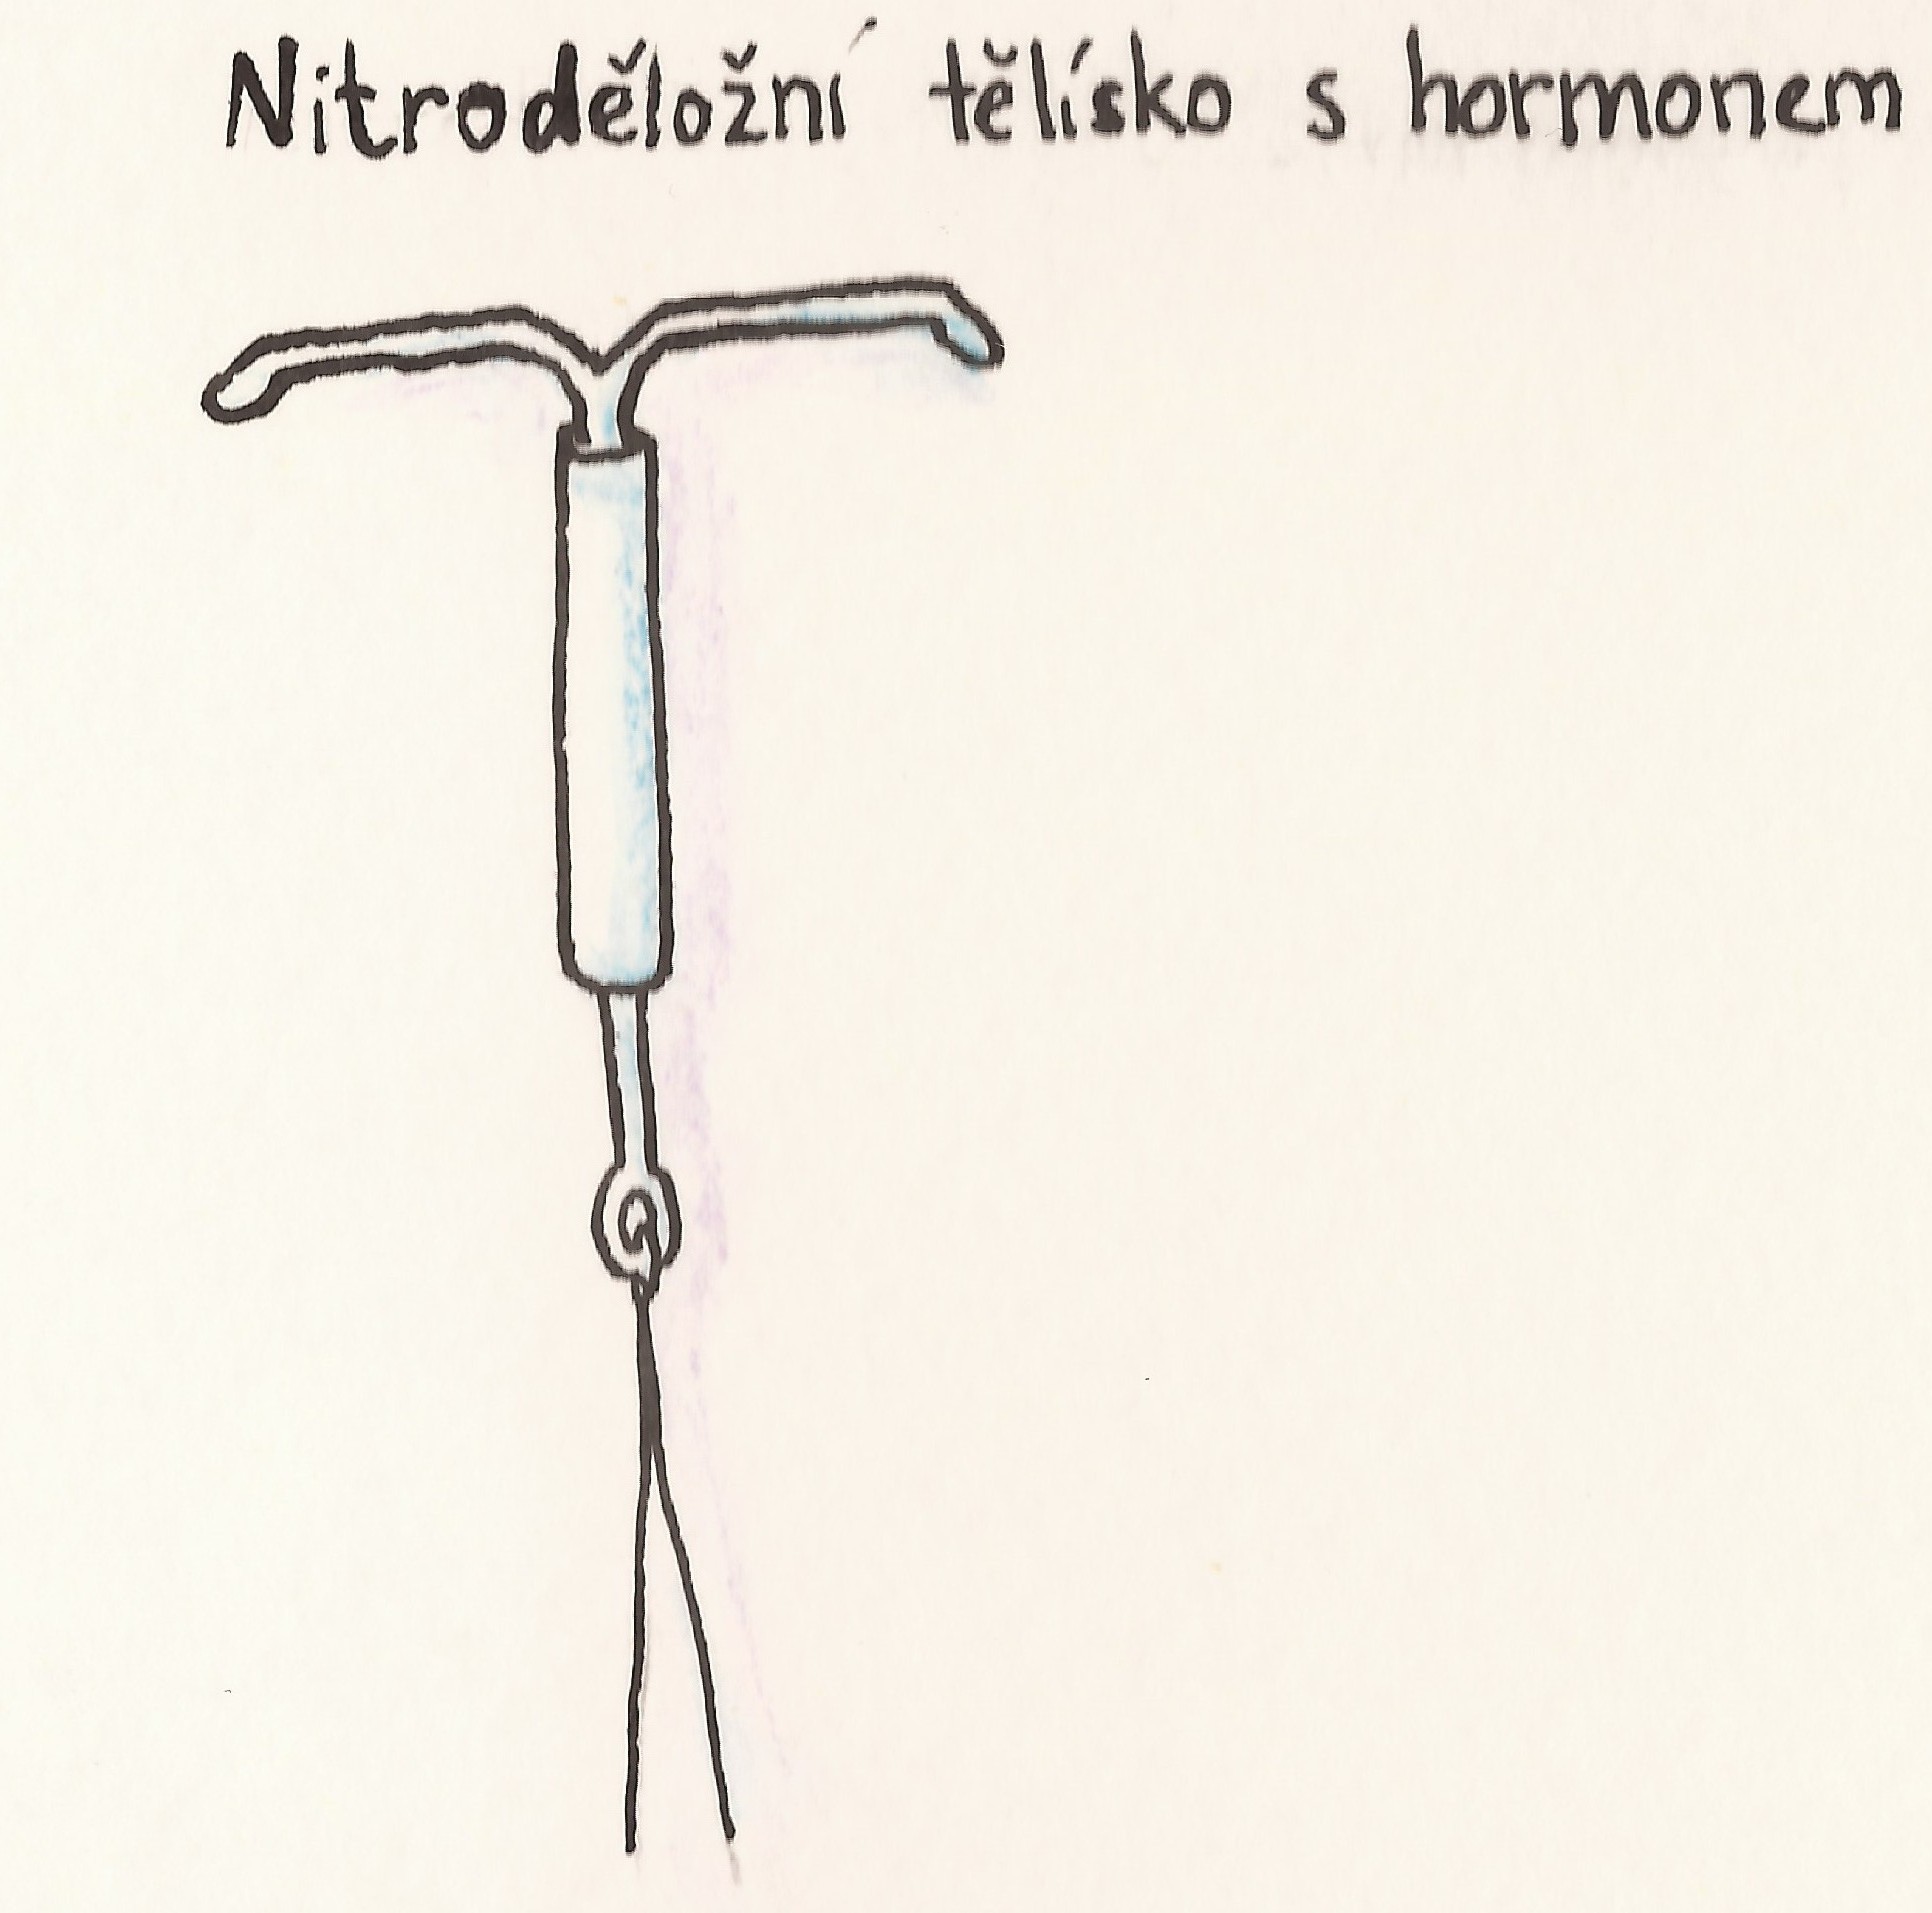 antikoncepce nitrodelozni telisko s hormonem